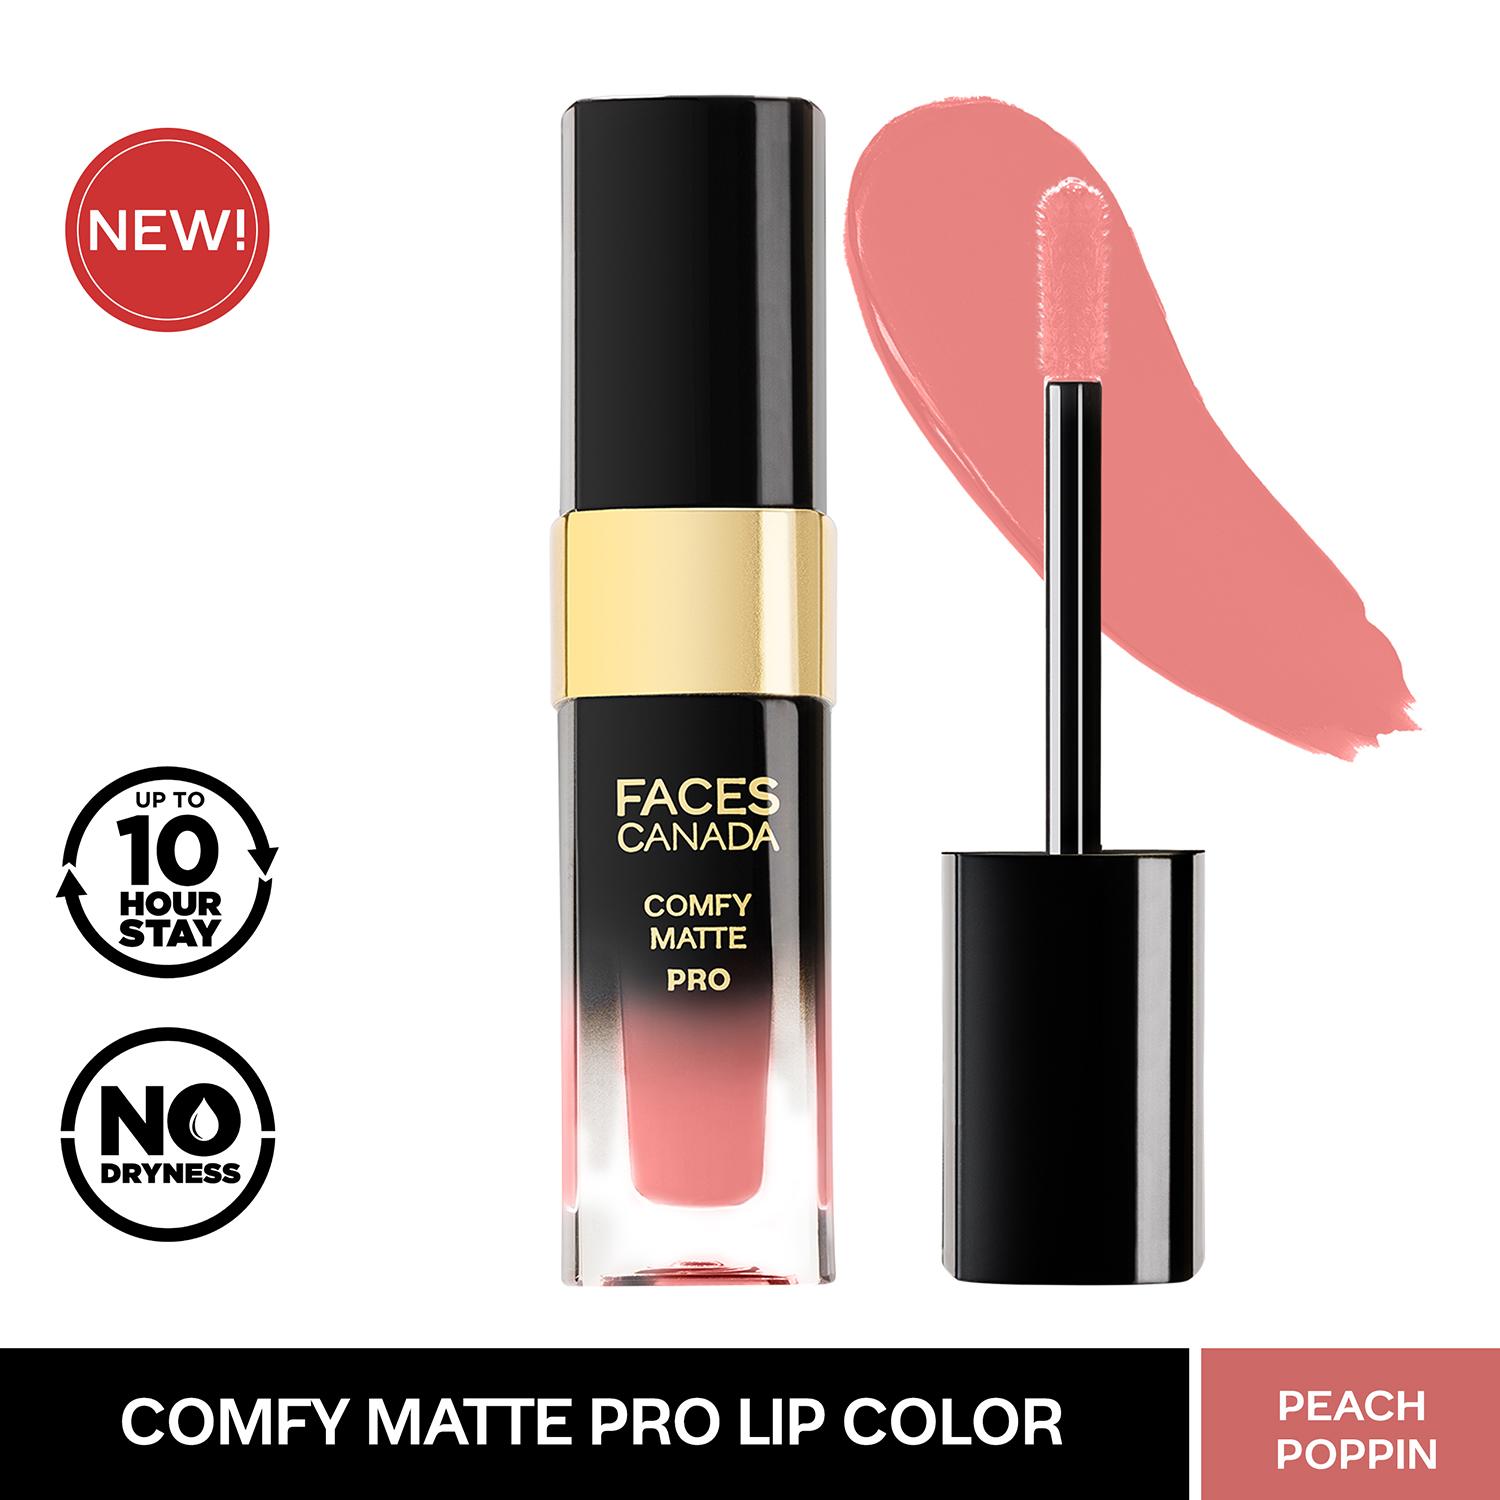 Faces Canada | Faces Canada Comfy Matte Pro Liquid Lipstick - 16 Peach Poppin (5.5ml)